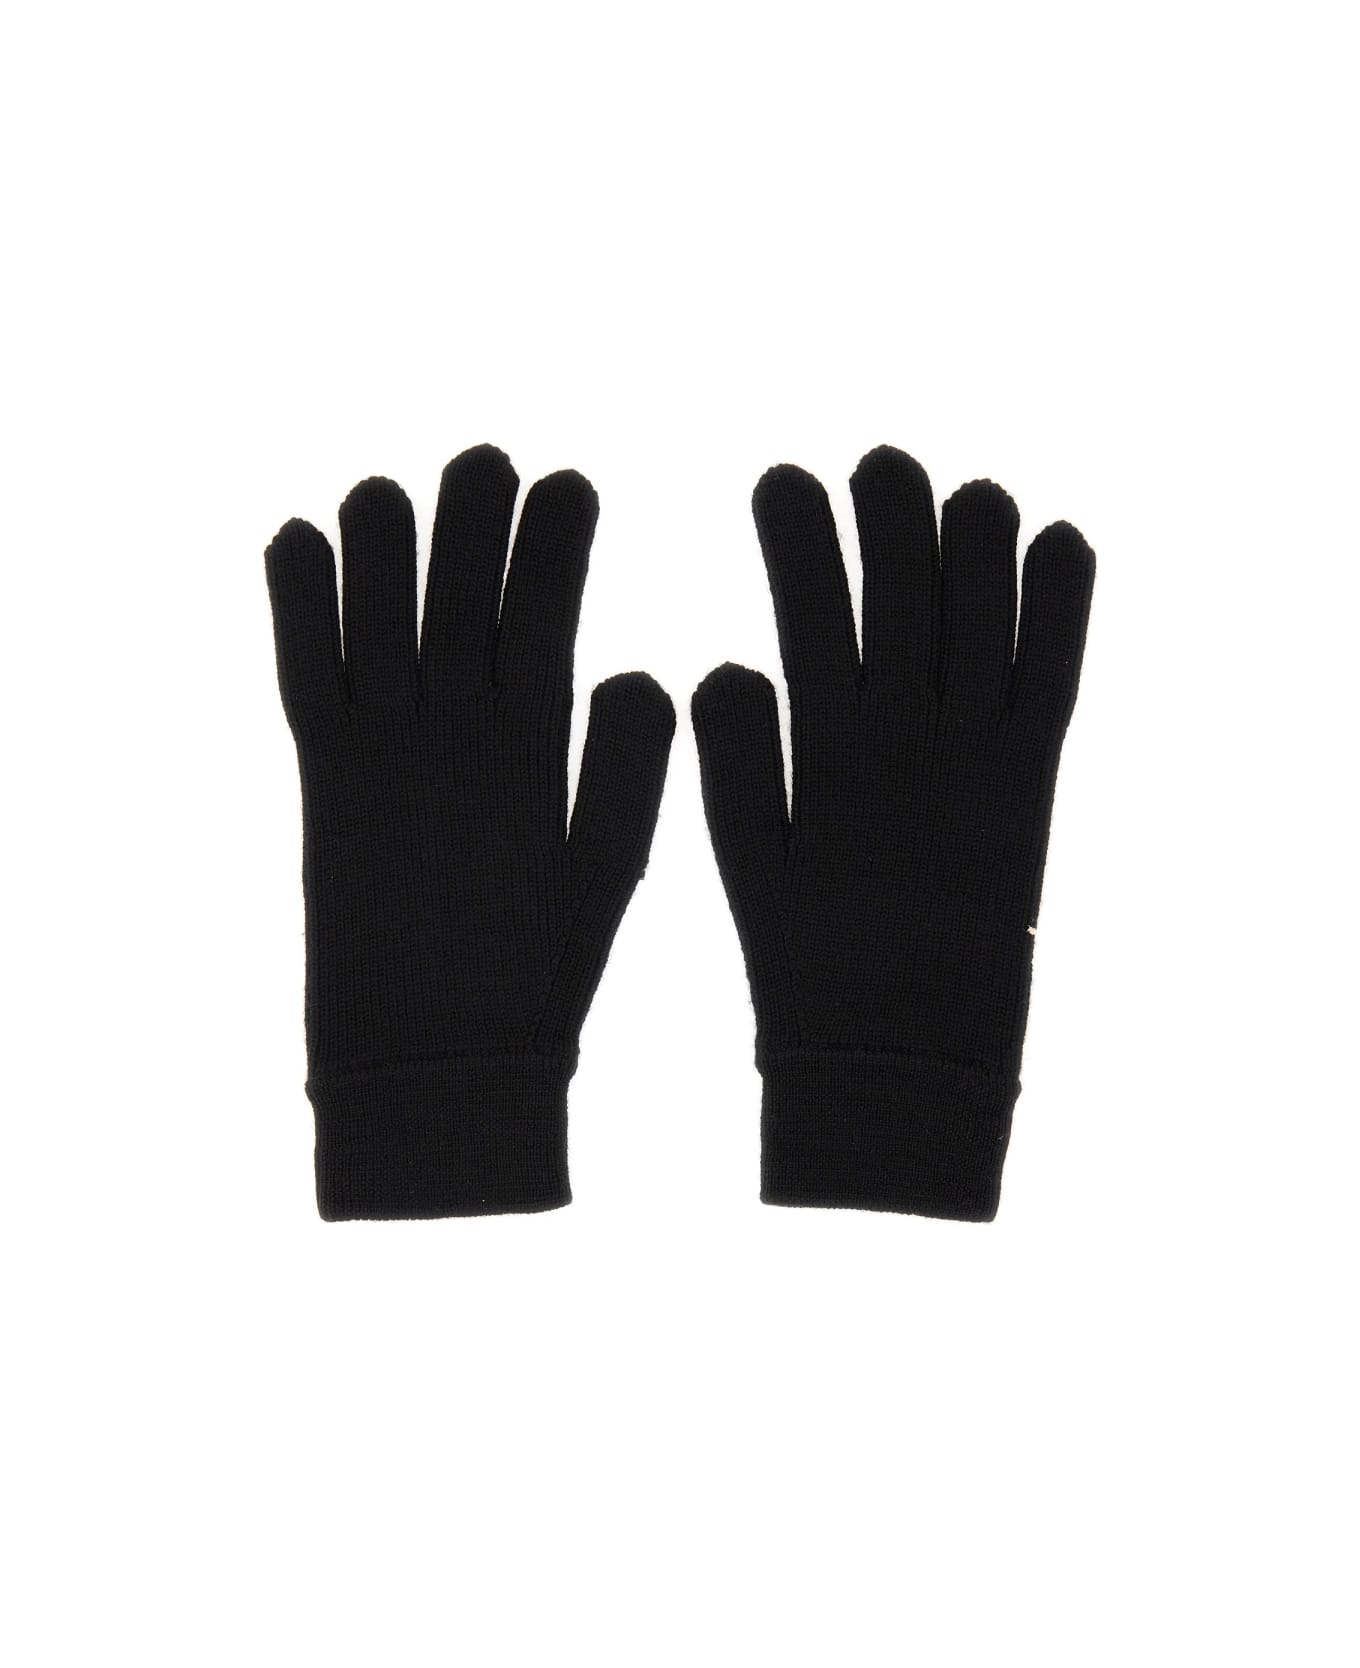 Paul Smith Artist Gloves - BLACK